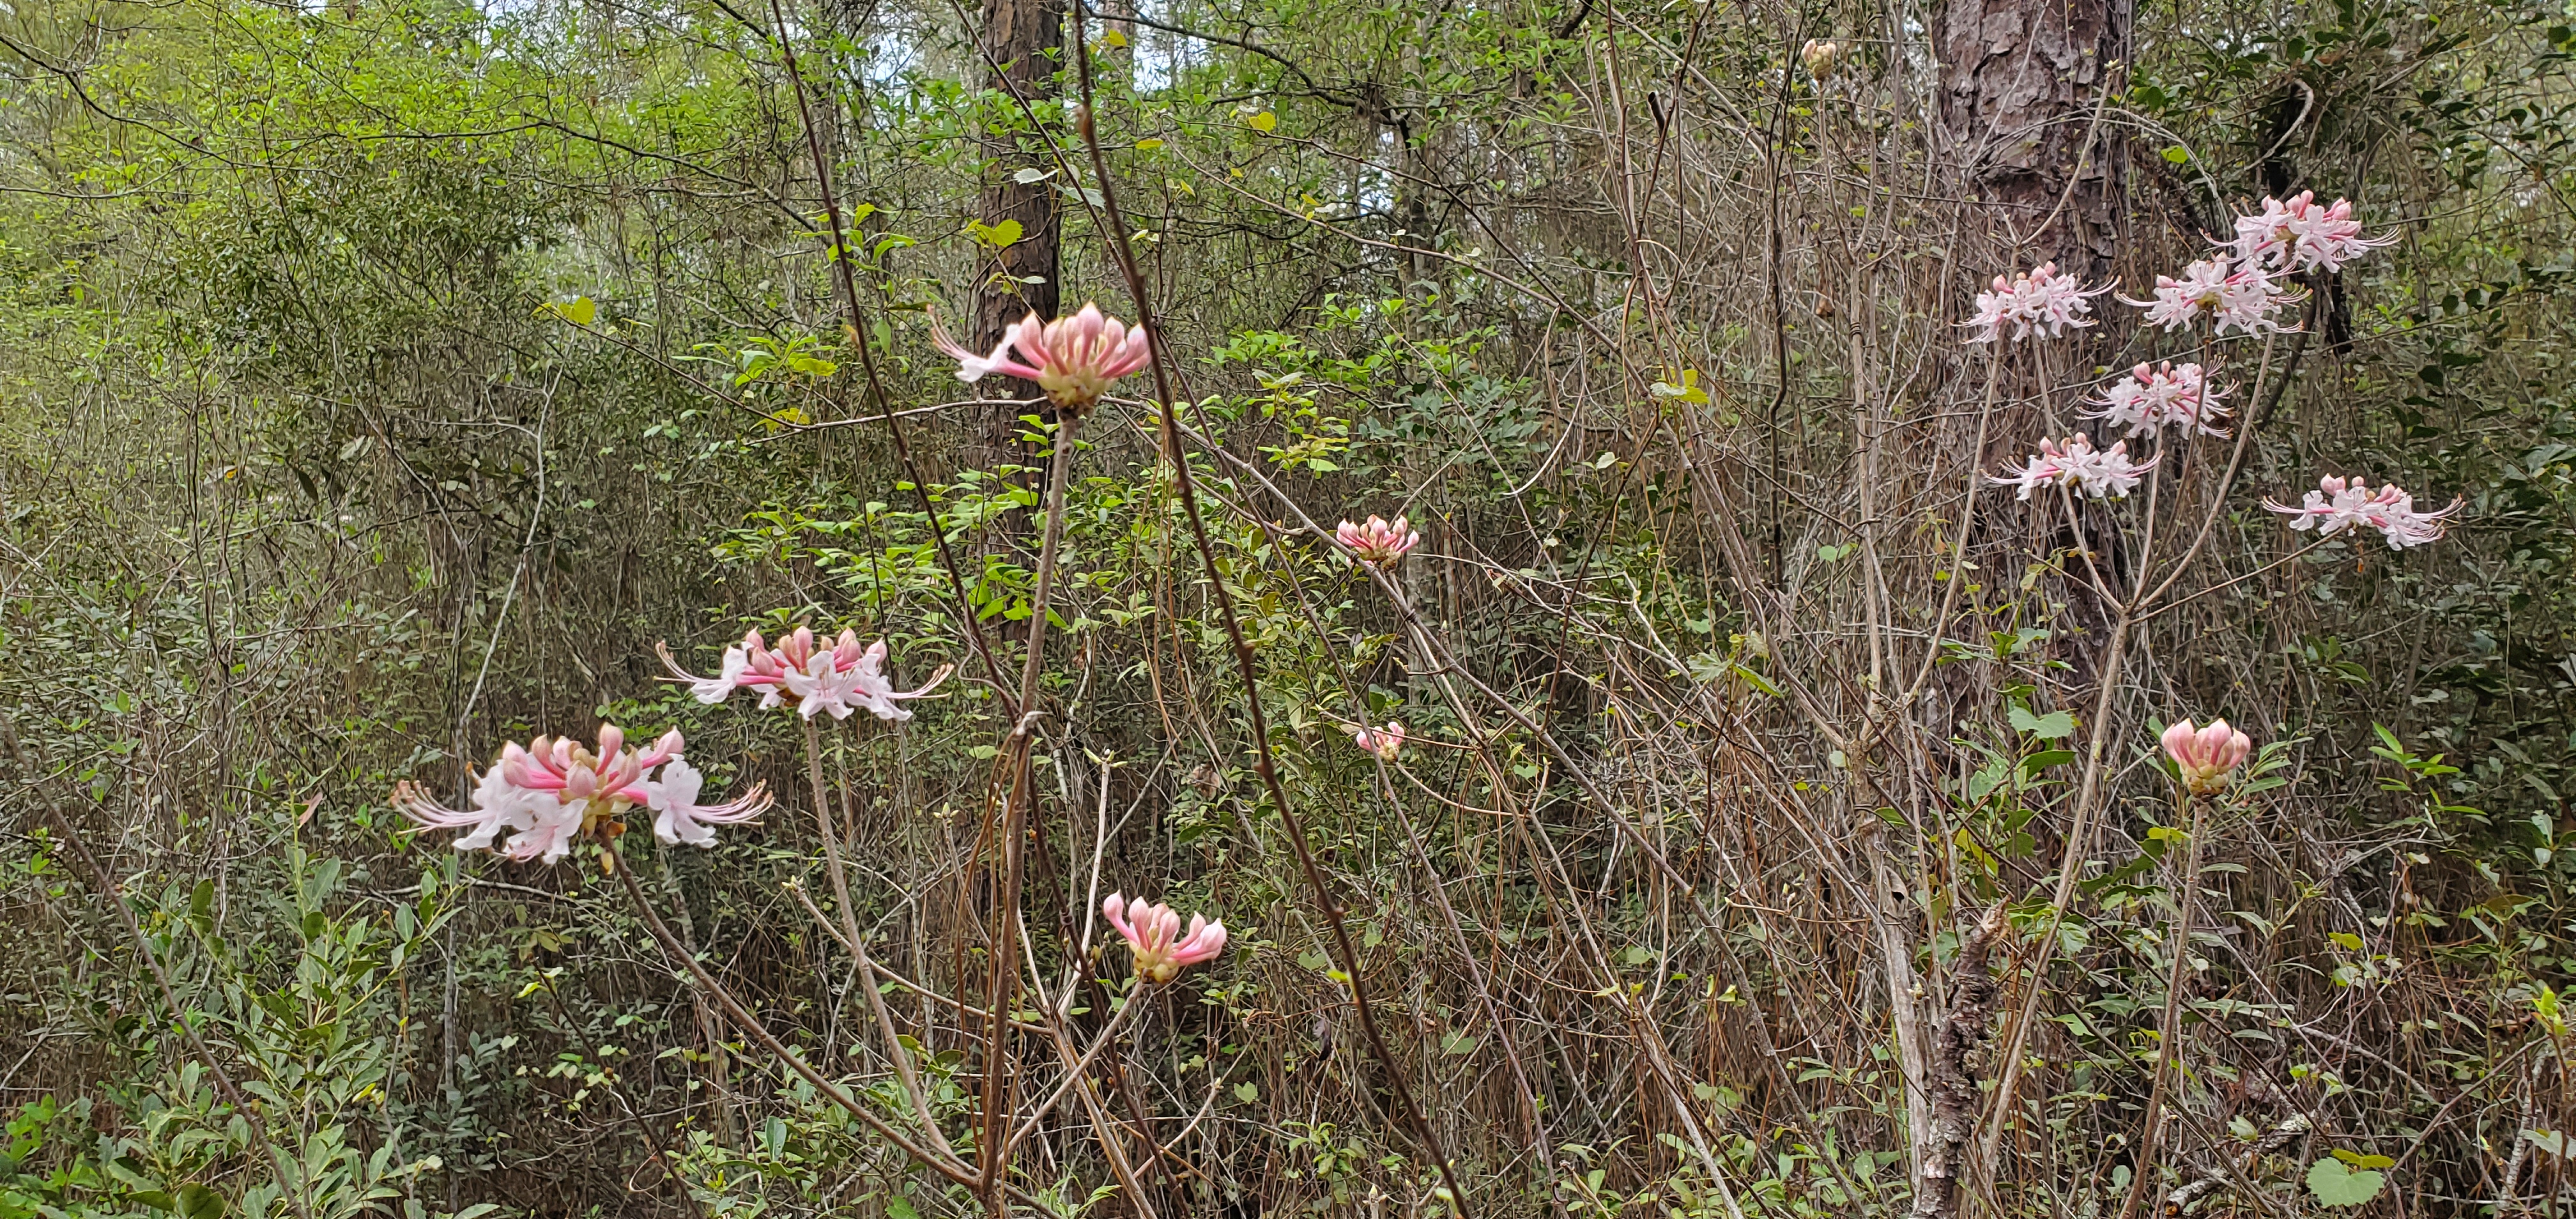 Wild azaleas